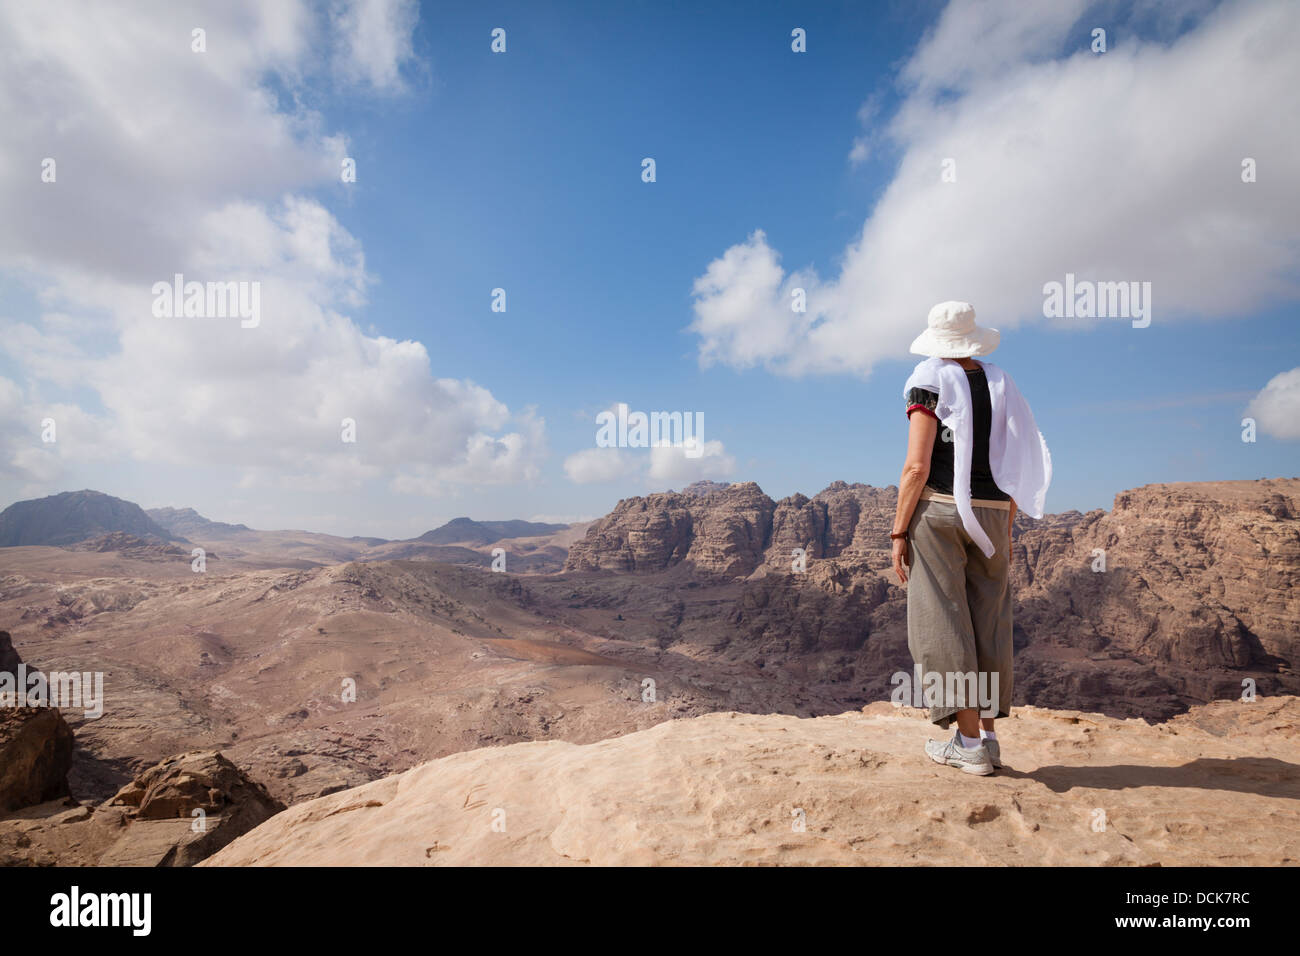 La femme est d'admirer une vue de désert jordanien lors d'une randonnée à Pétra. Banque D'Images